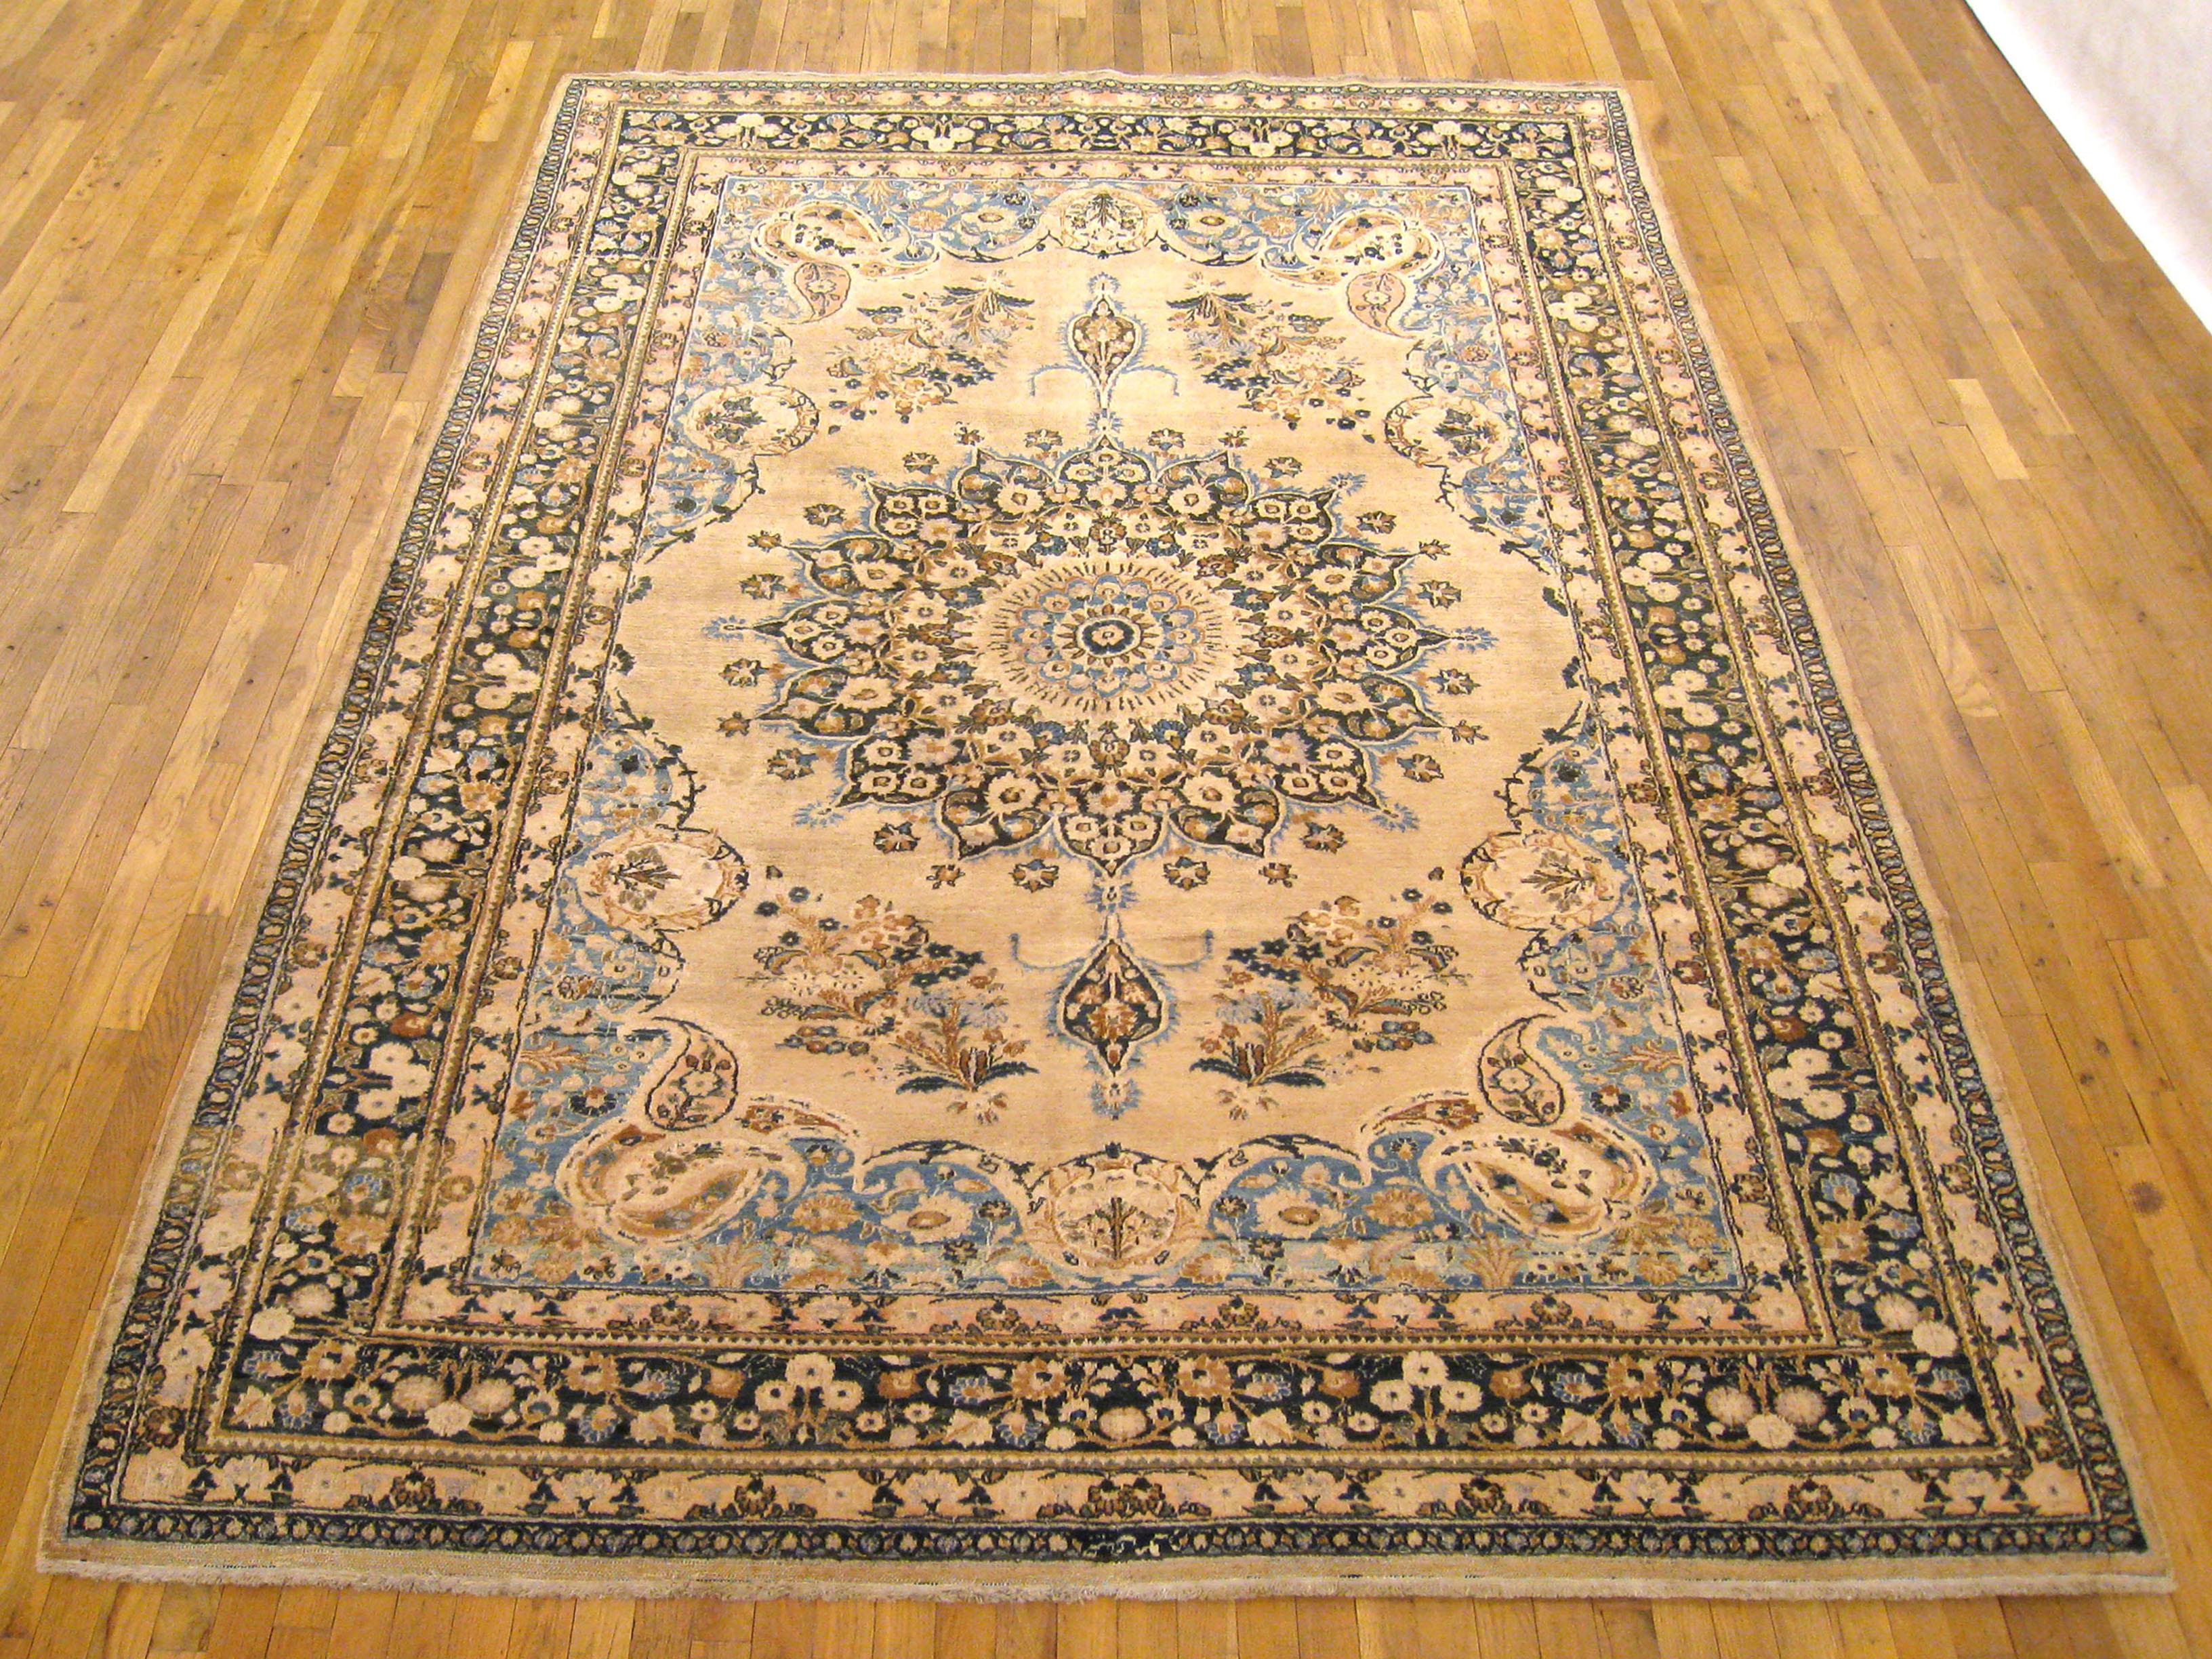 Vintage Persian Mesh Orientteppich, Raumgröße.

Ein Vintage Persisch Mesh orientalischen Teppich, Größe 10'5